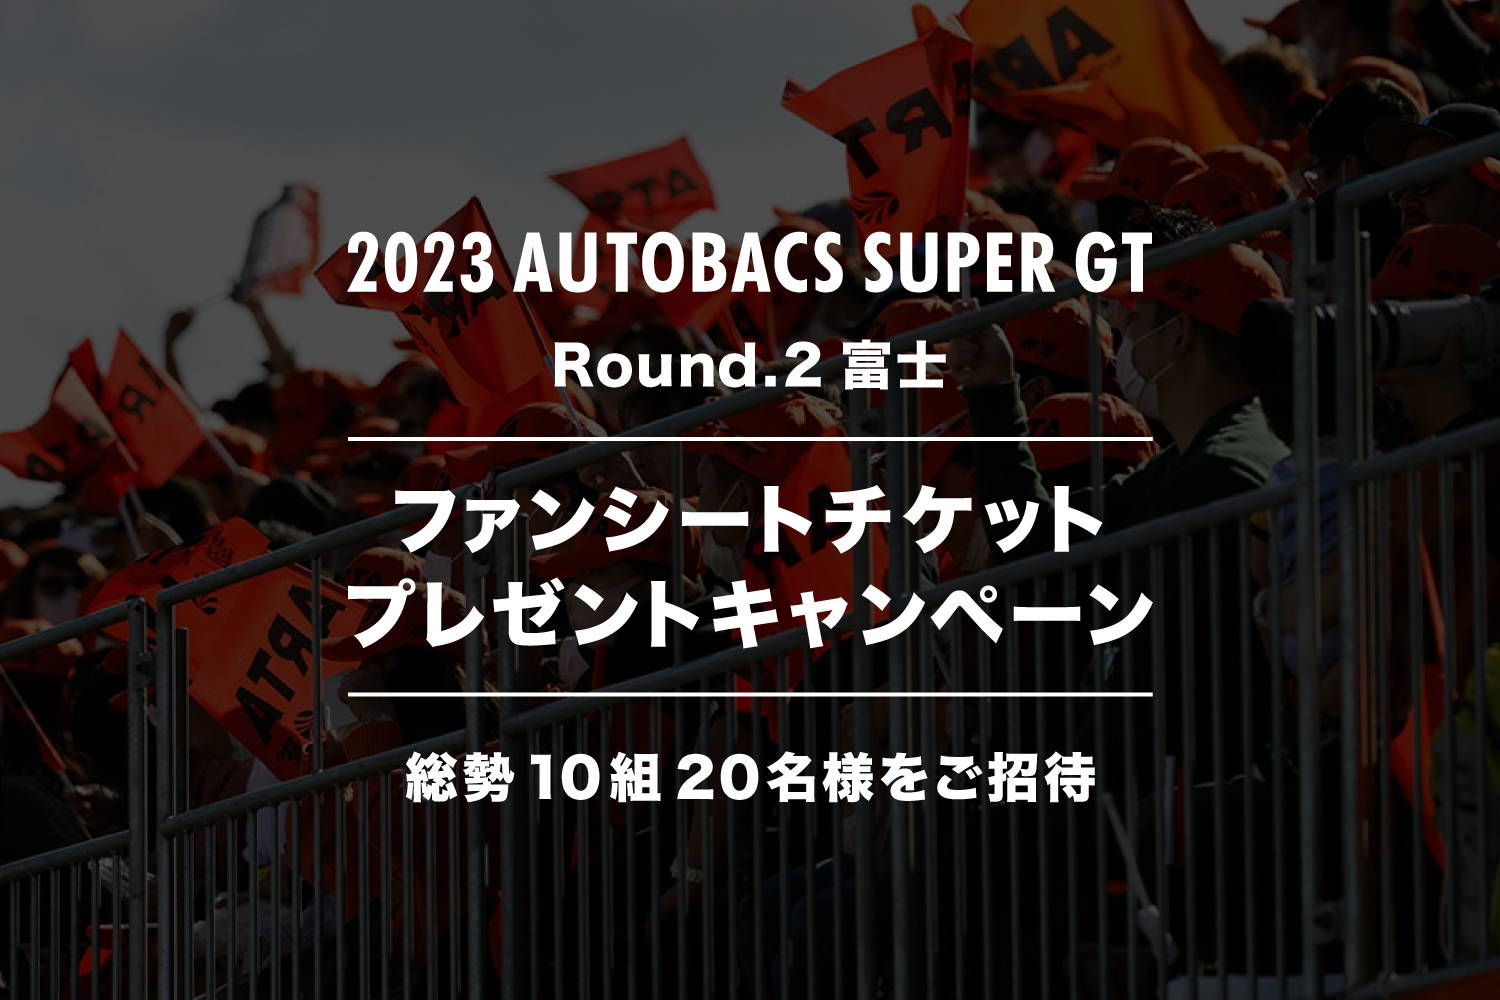 【終了いたしました】2023 AUTOBACS SUPER GT Round.2 (富士